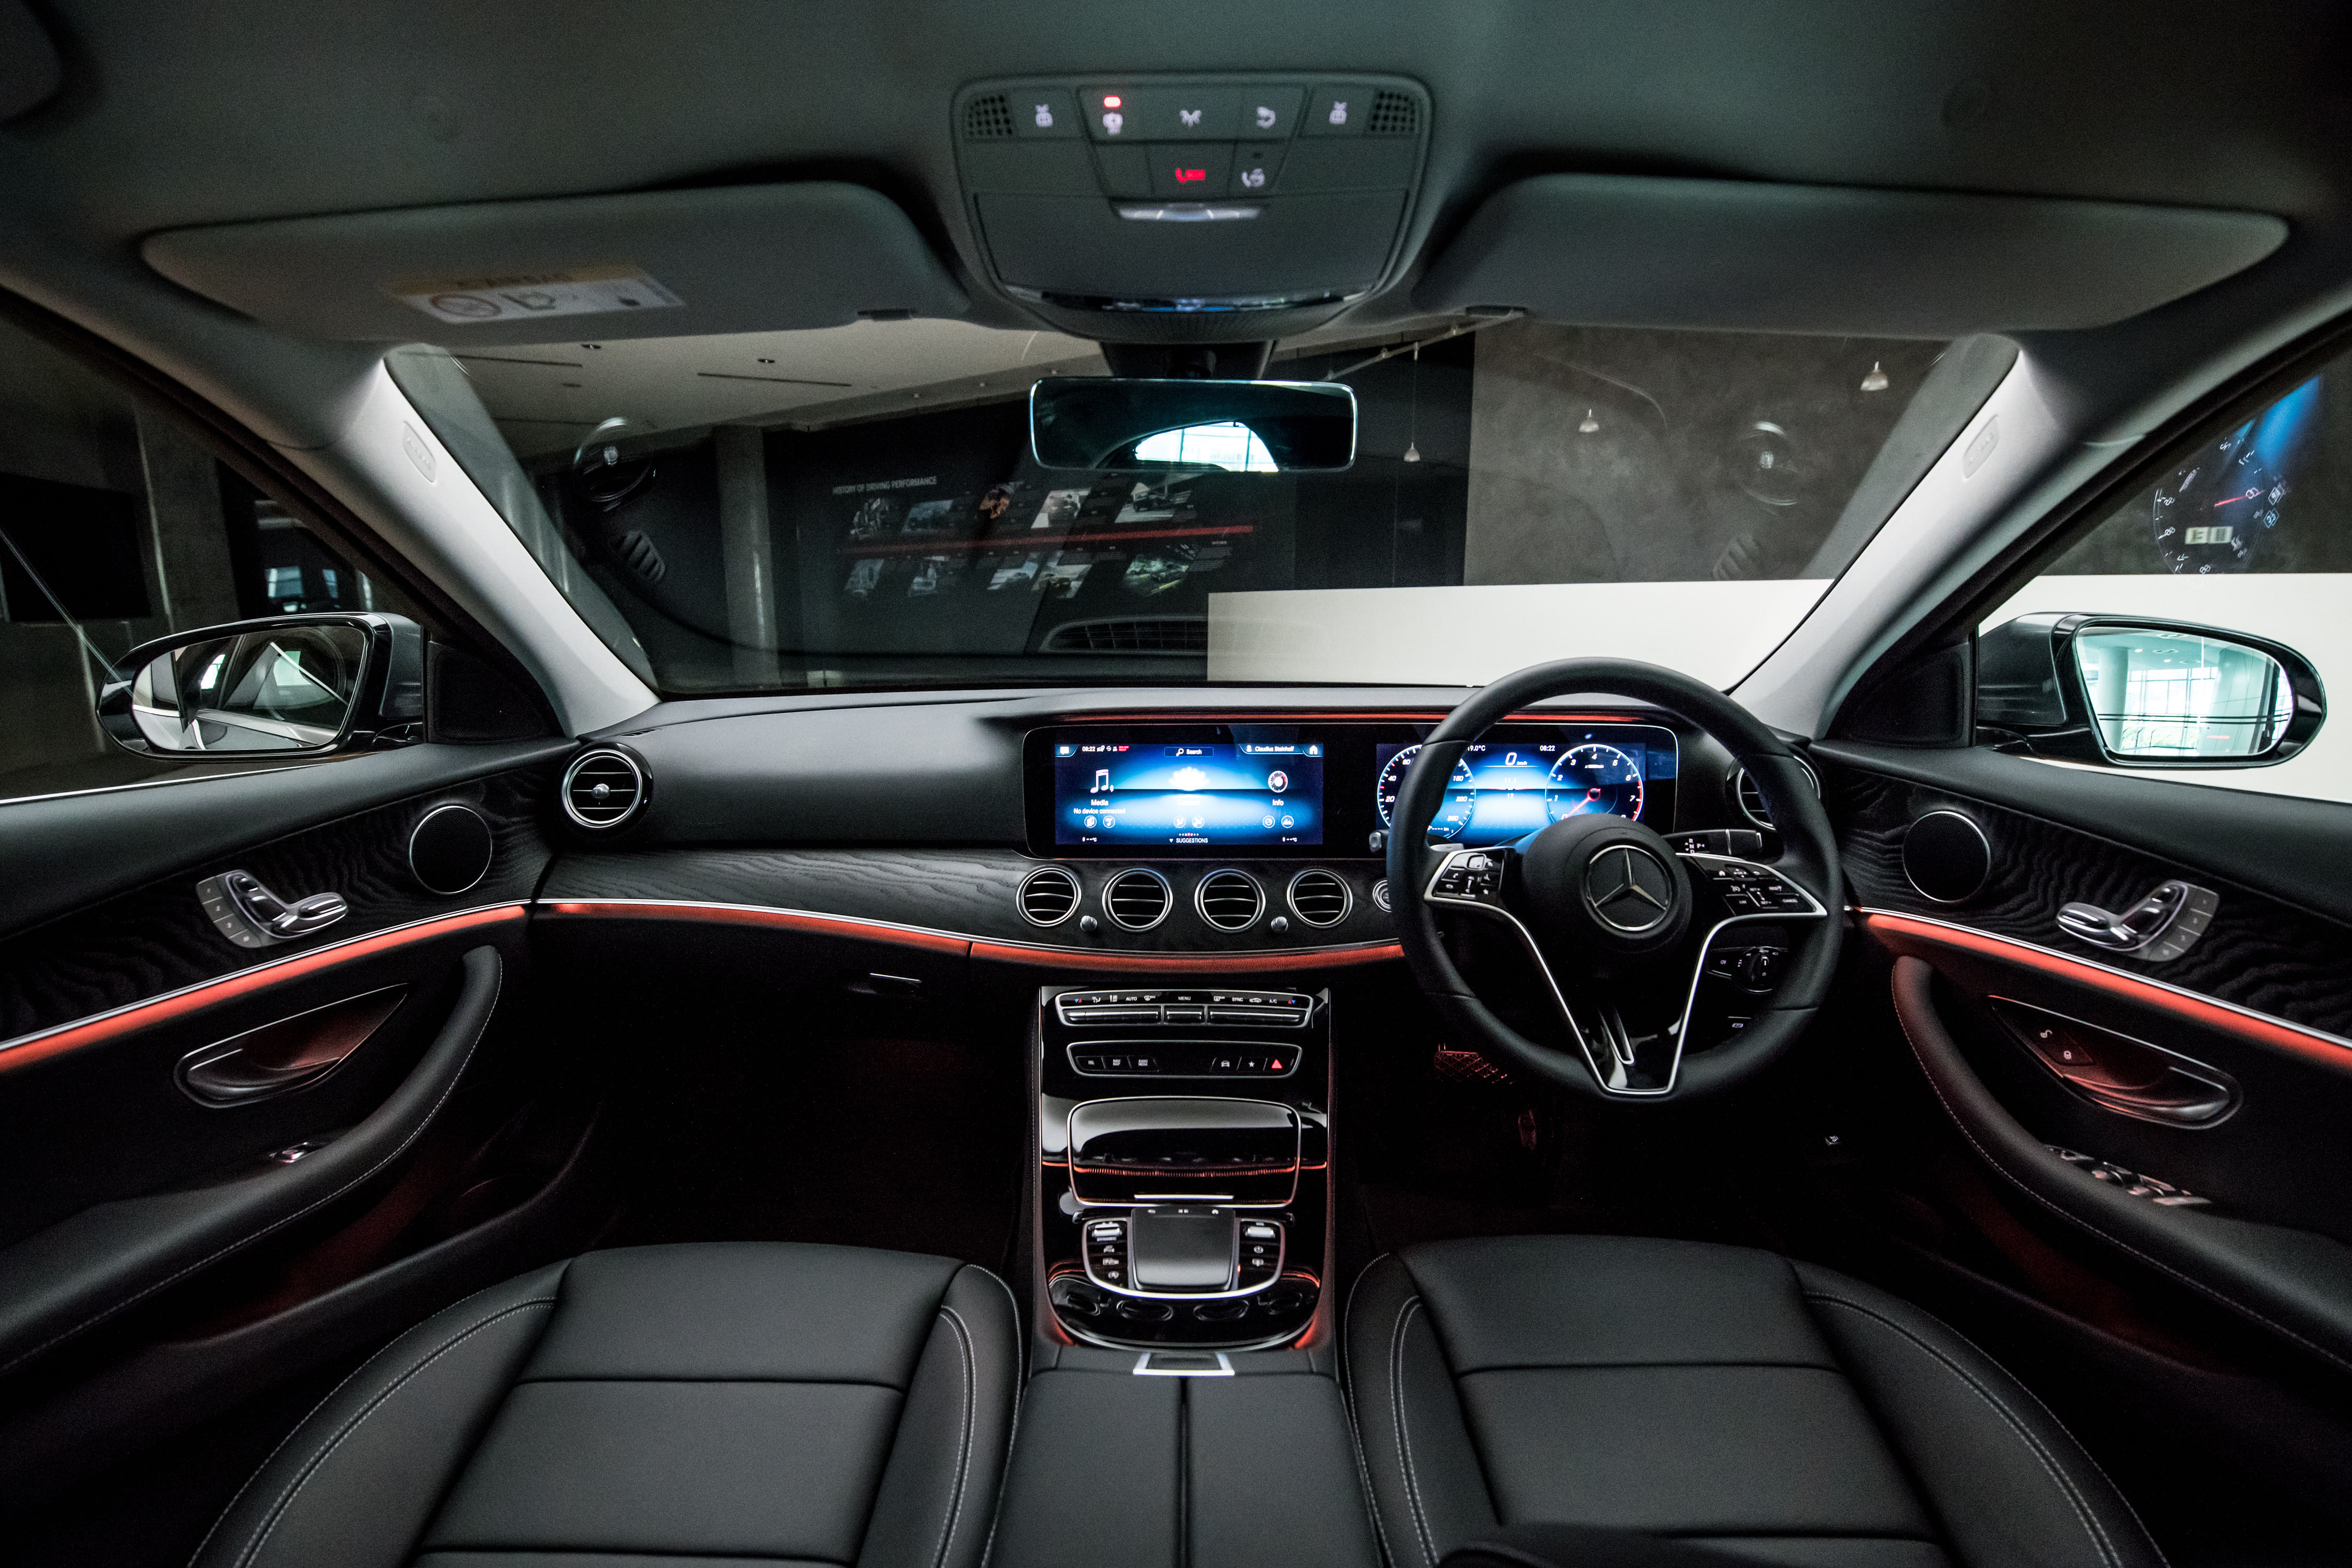 The interior of the Mercedes-Benz E 200 Avantgarde.